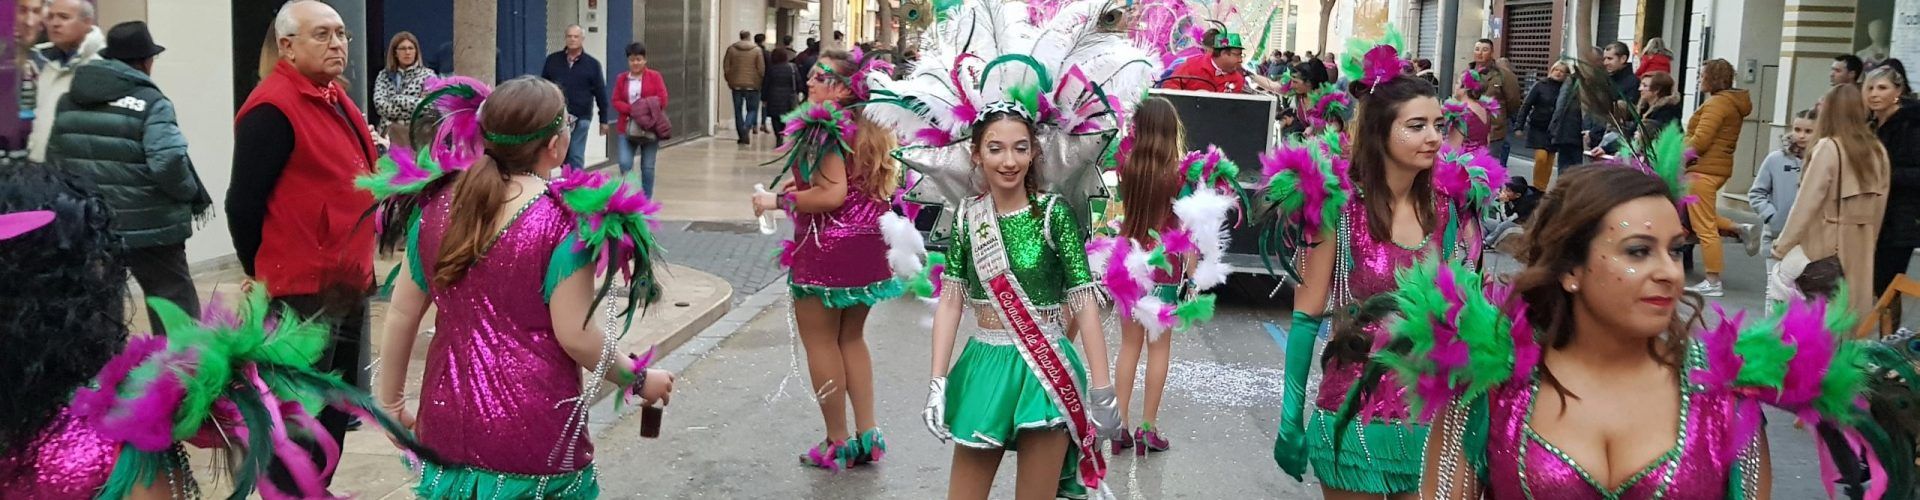 La segona desfilada de Carnaval, en fotos